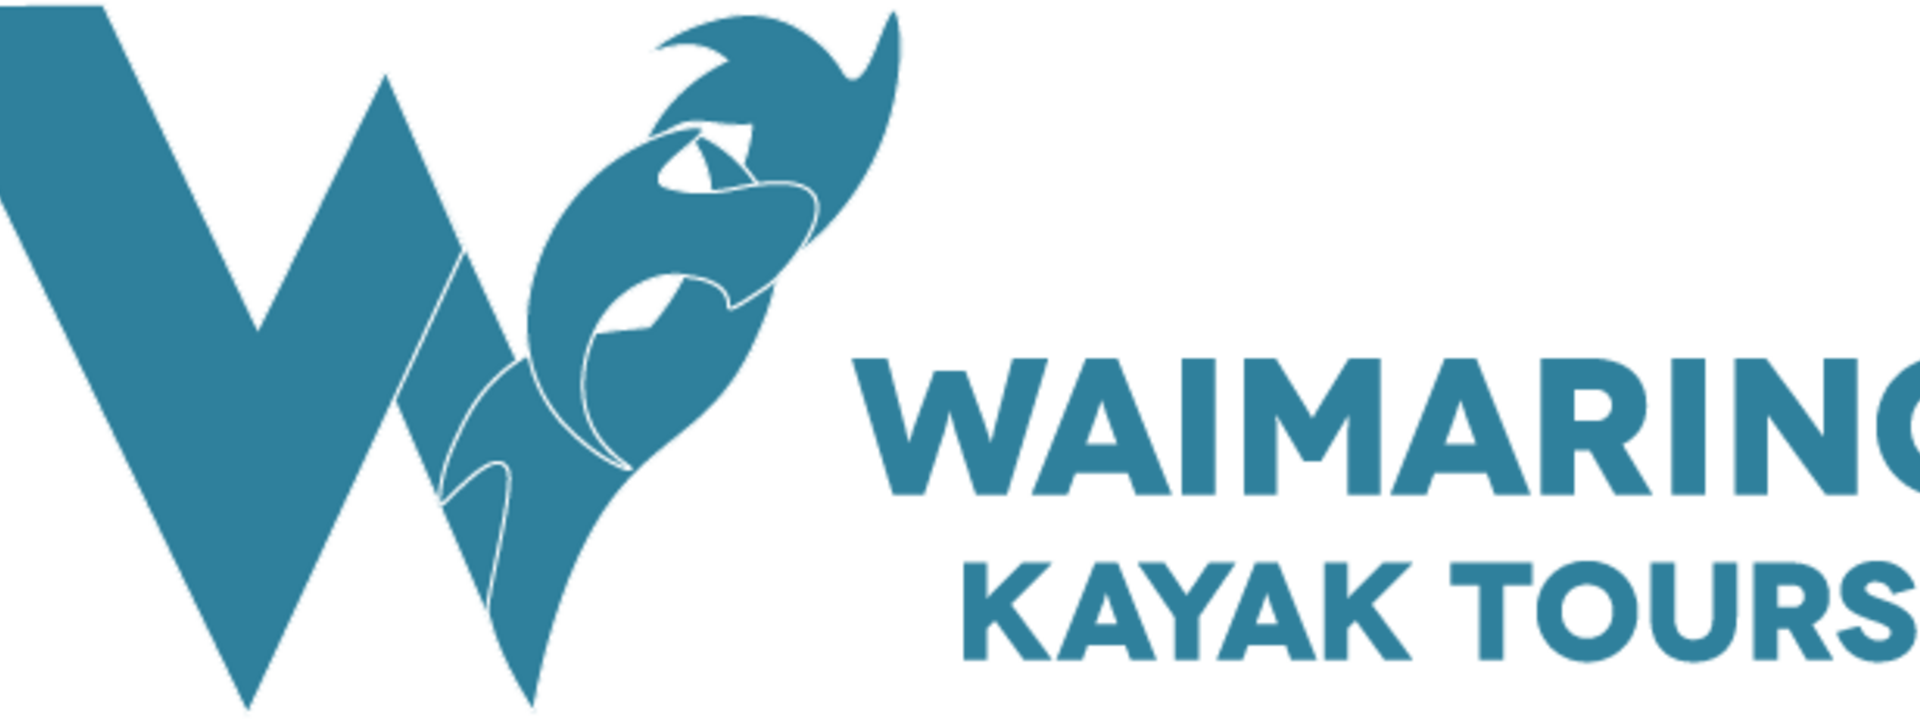 Blue Kayak Tours Horizontal Logo.png